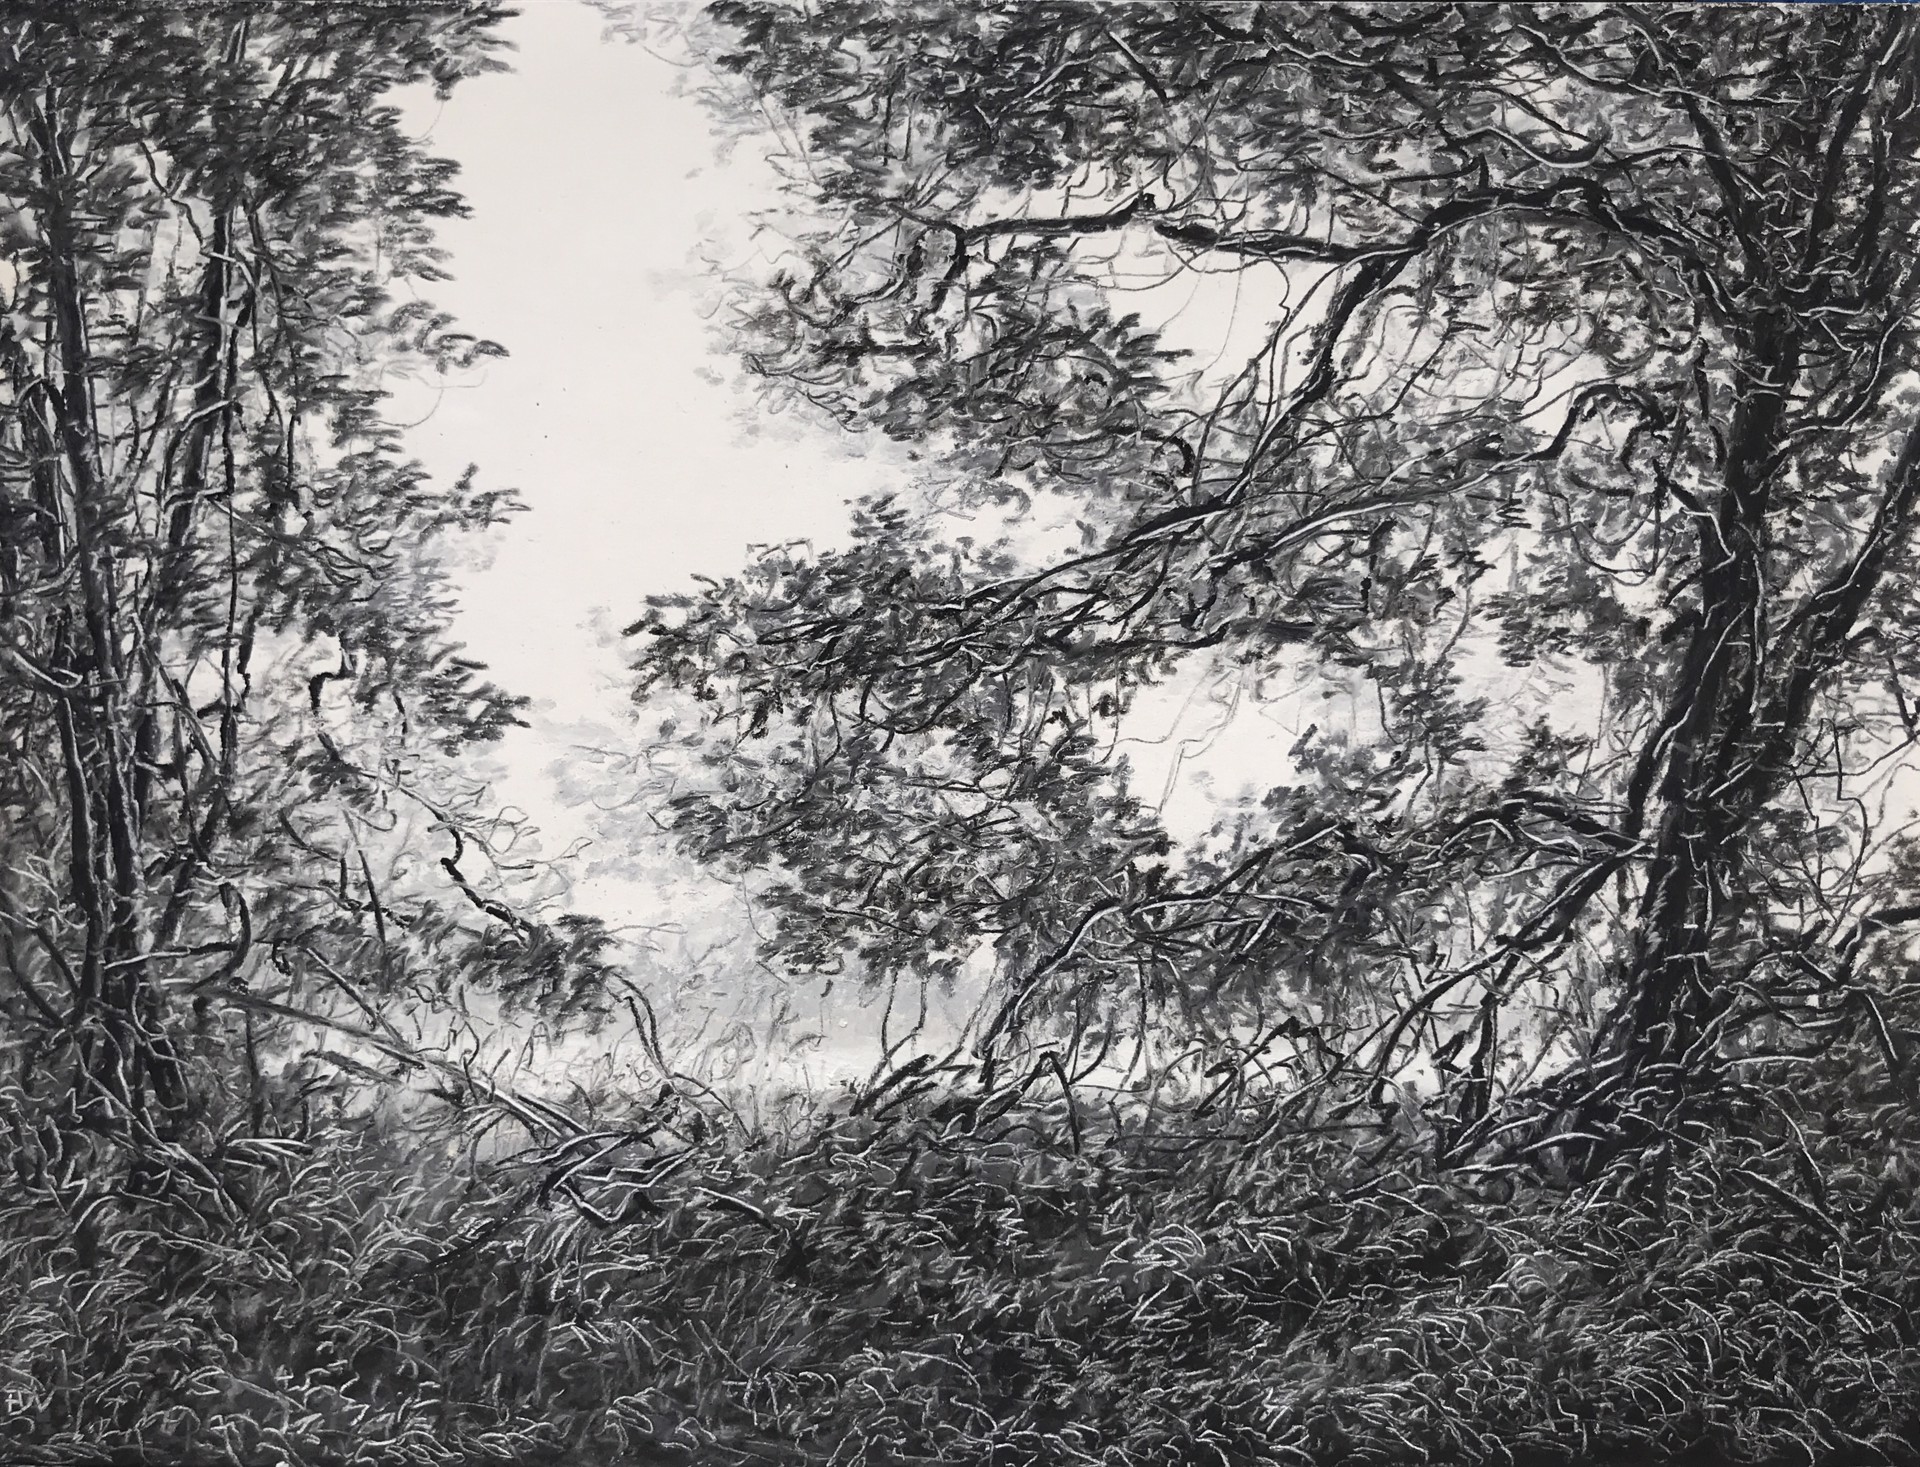 Tangled Oaks in a Meadow by Ellen Wagener